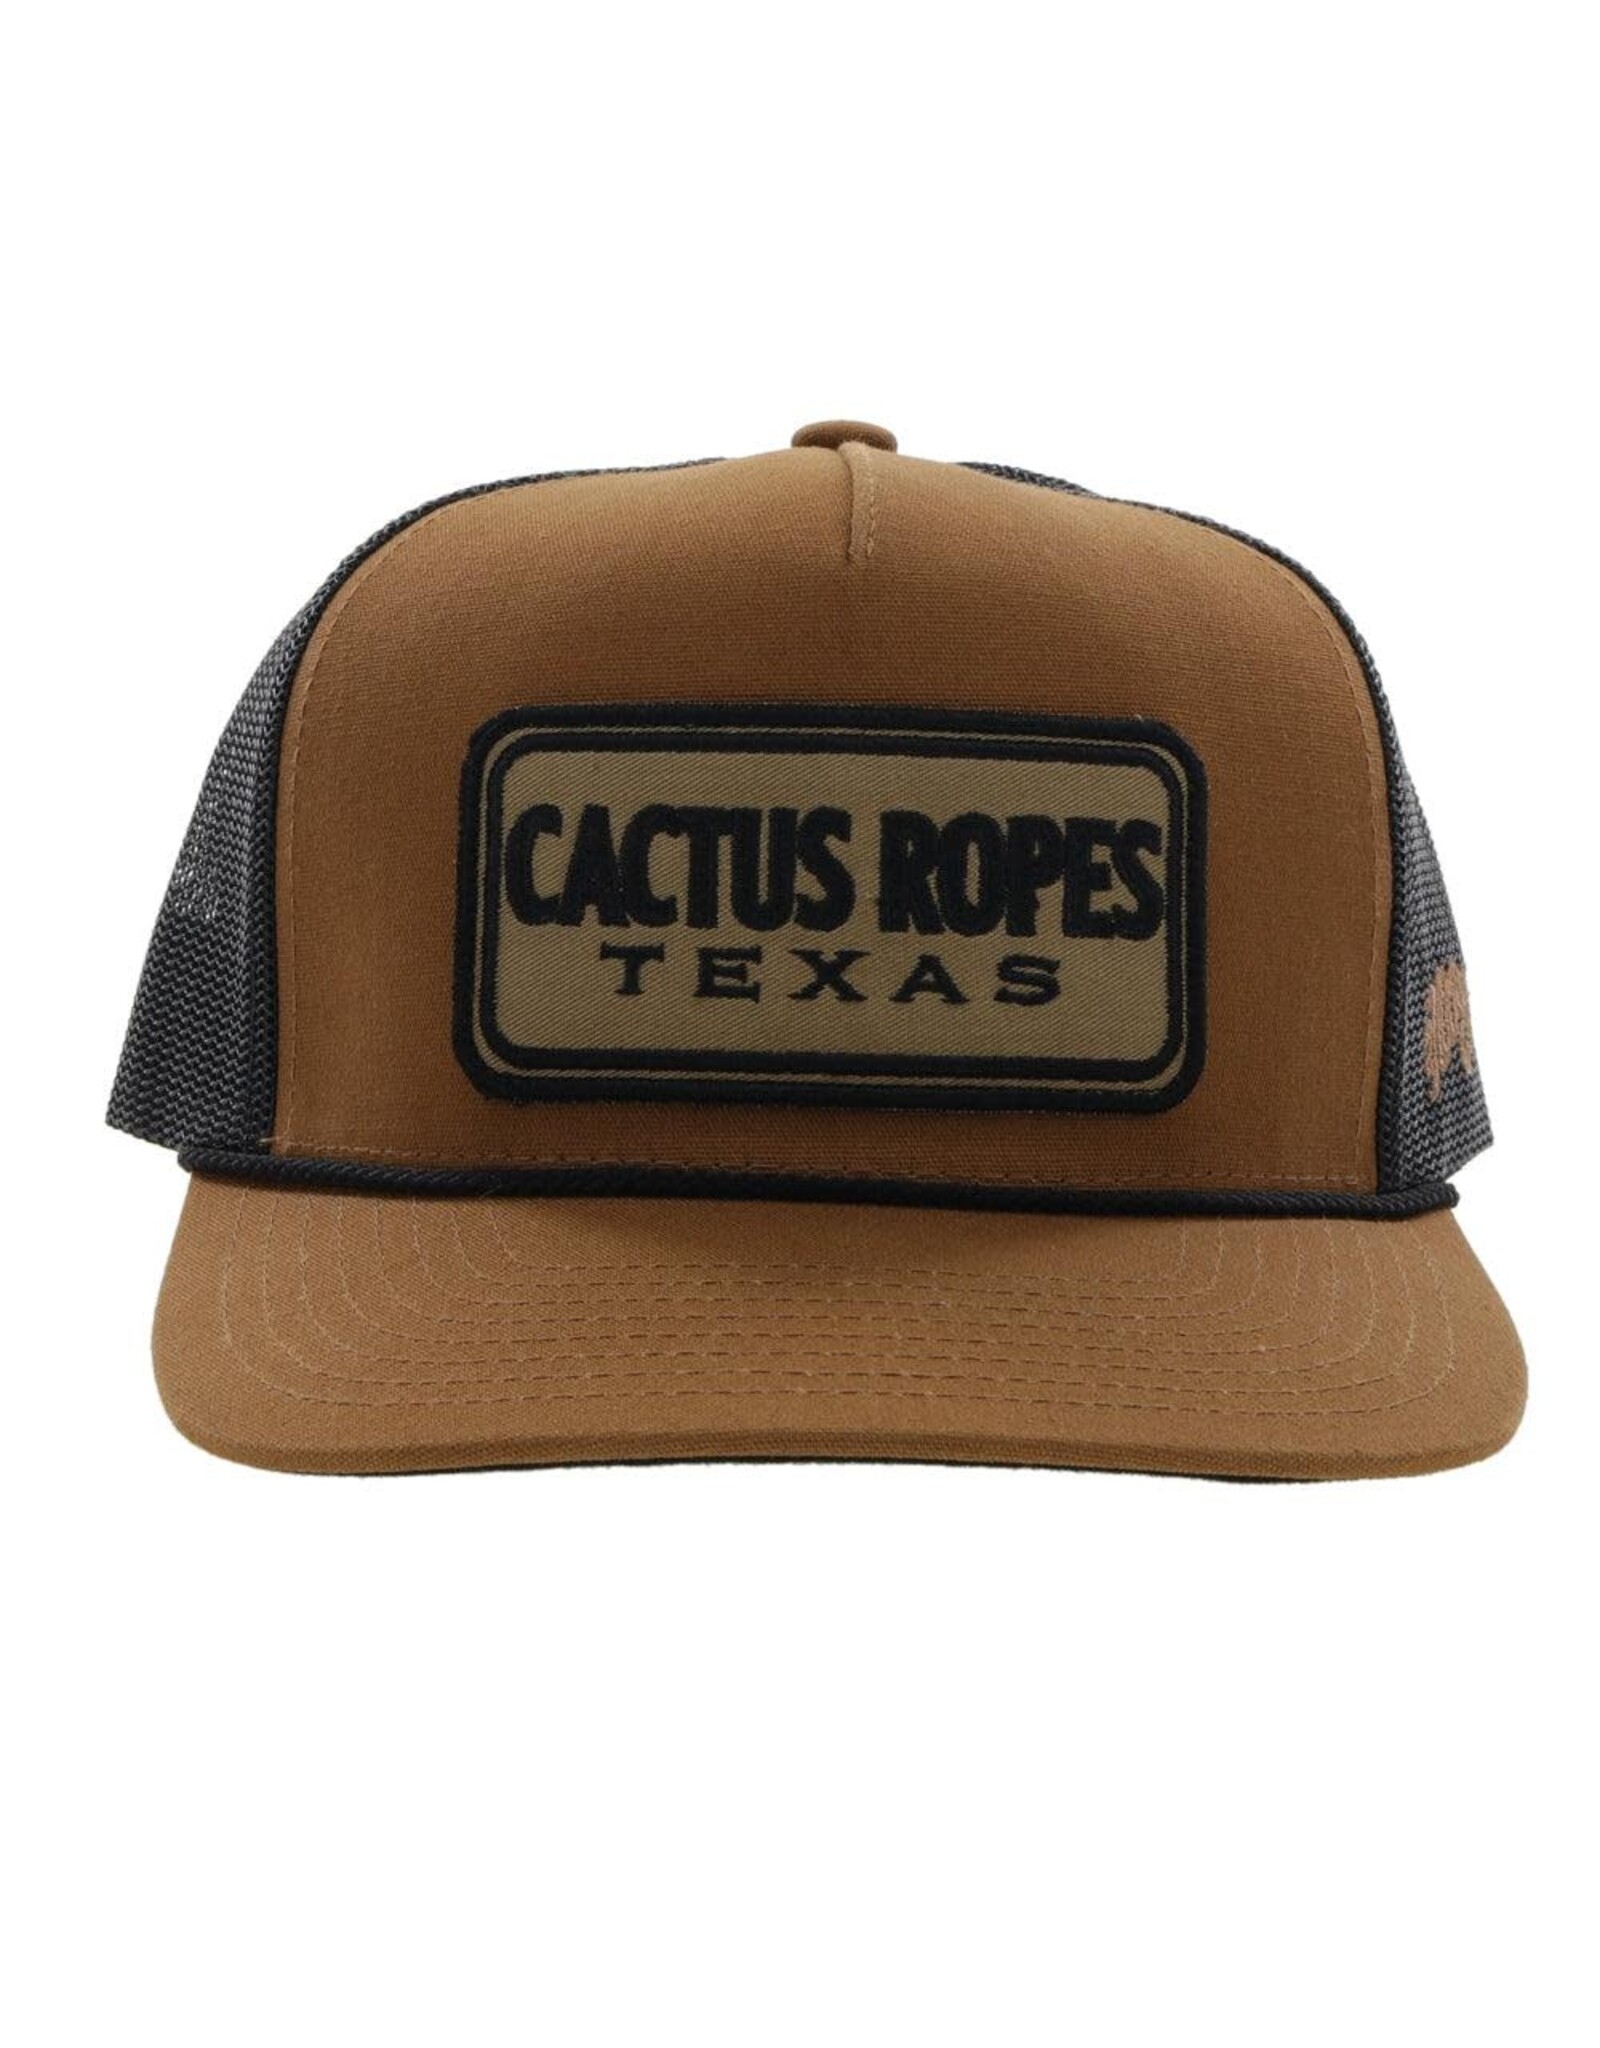 Hooey Brands Hat Cactus Ropes "CR079" Tan/Black